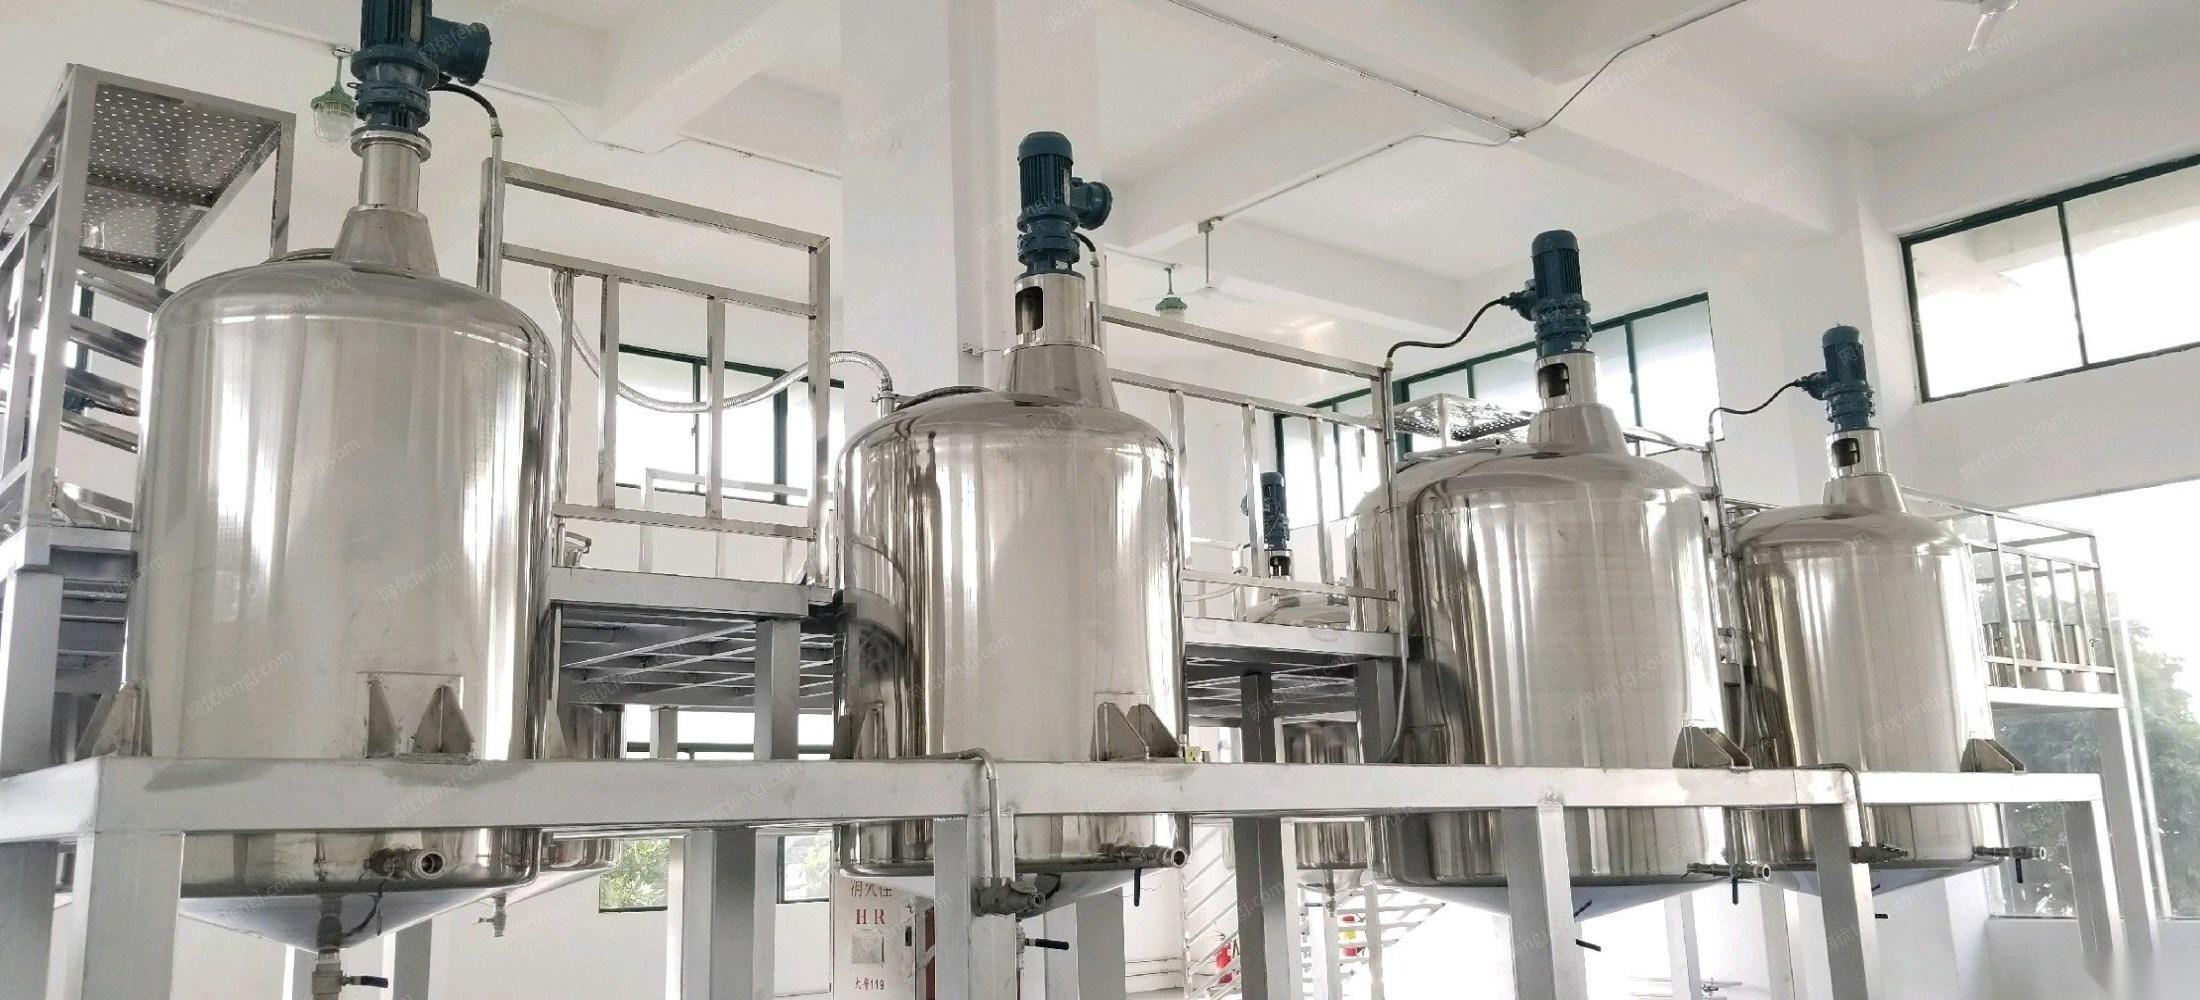 广东广州厂家全新未用反应釜、搅拌罐、消毒清洁用品生产设备低价处理 180000元